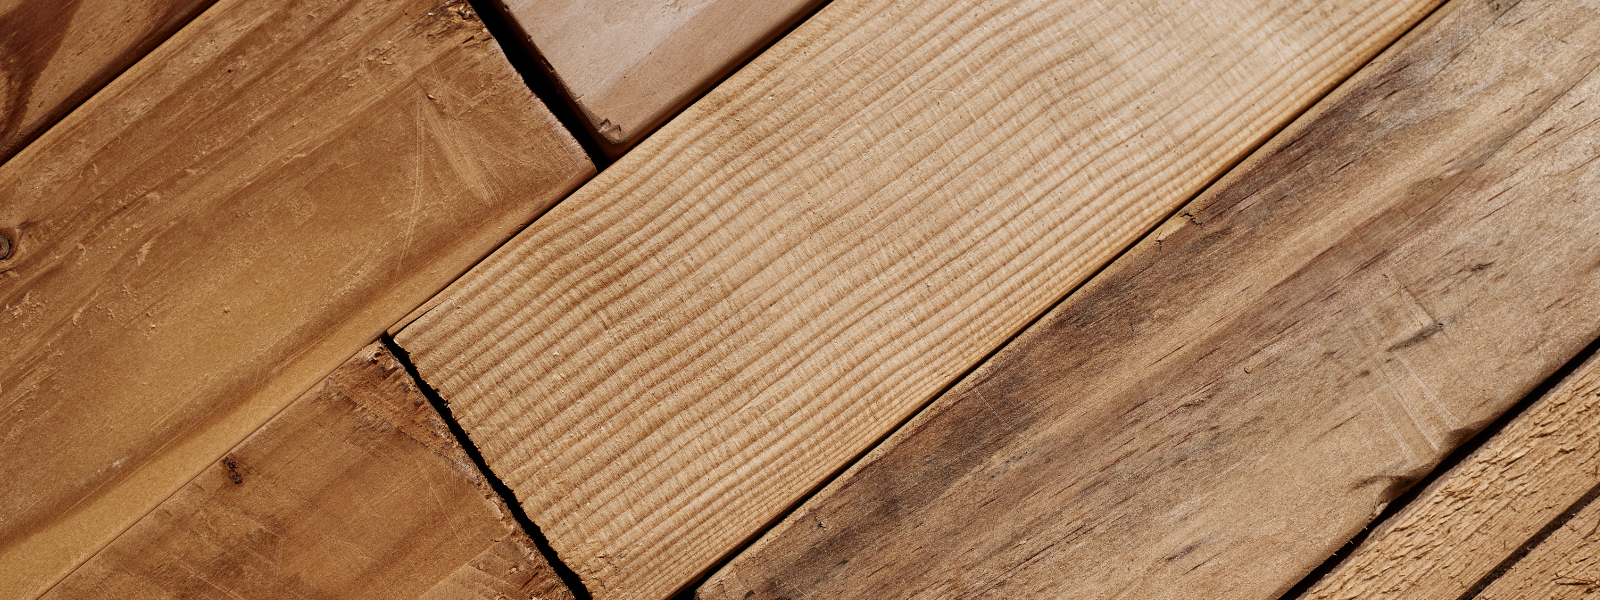 VIVANDOR OÜ - Vivandor tegeleb kvaliteetsete puidutoodete tootmise ning müügiga.
Pakume kvaliteetset kopa teenust: Kra...